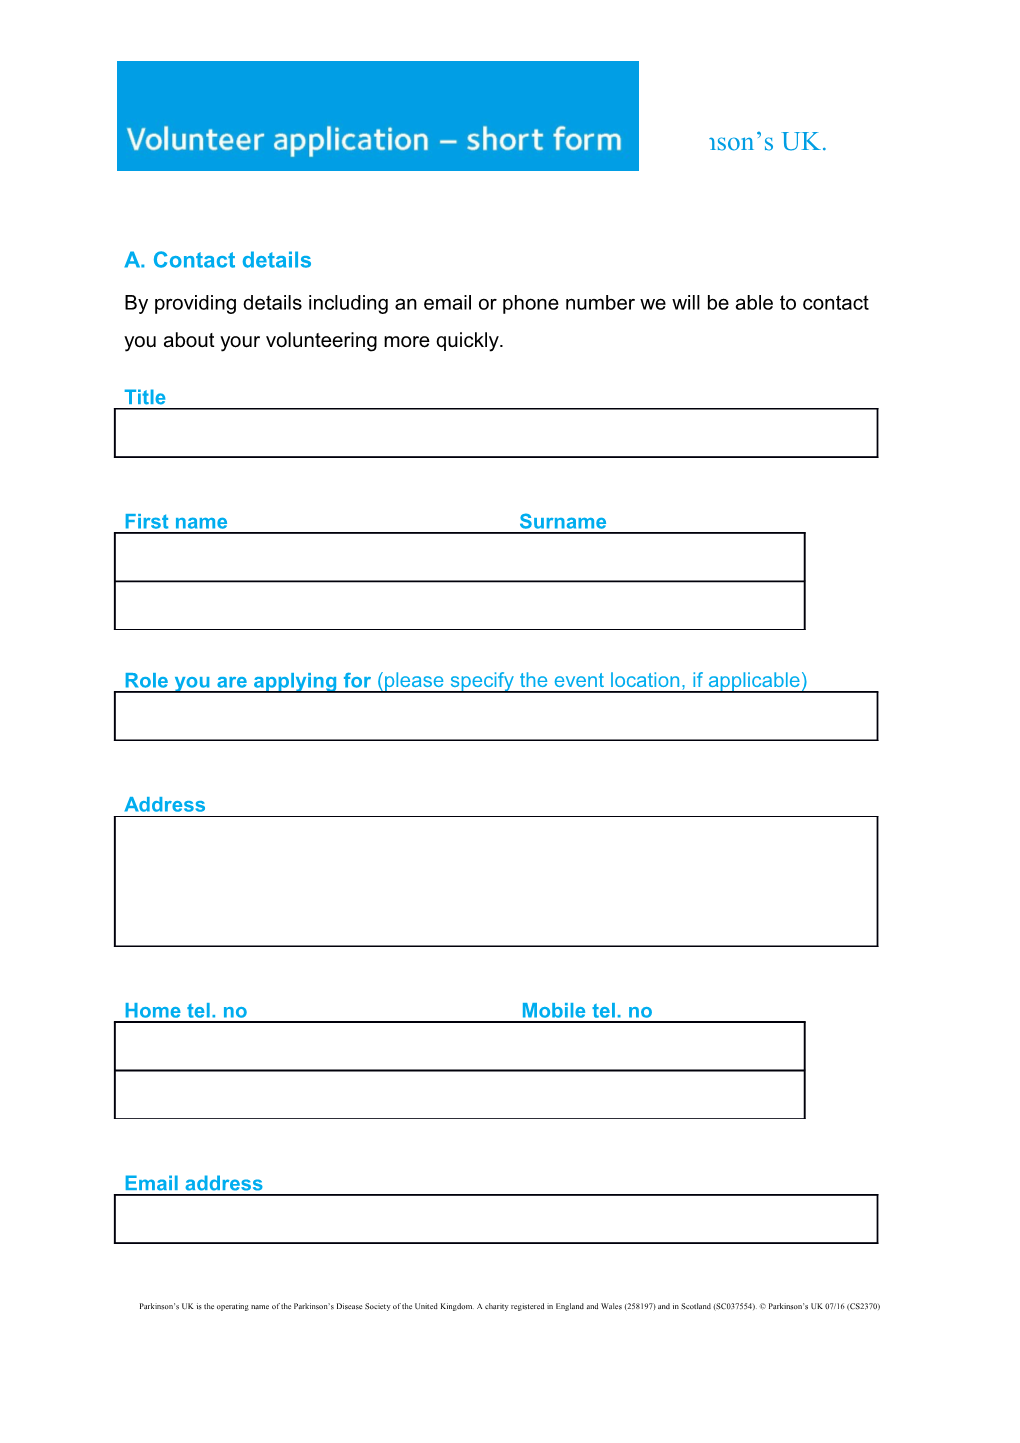 Volunteering Application Form - Short Version